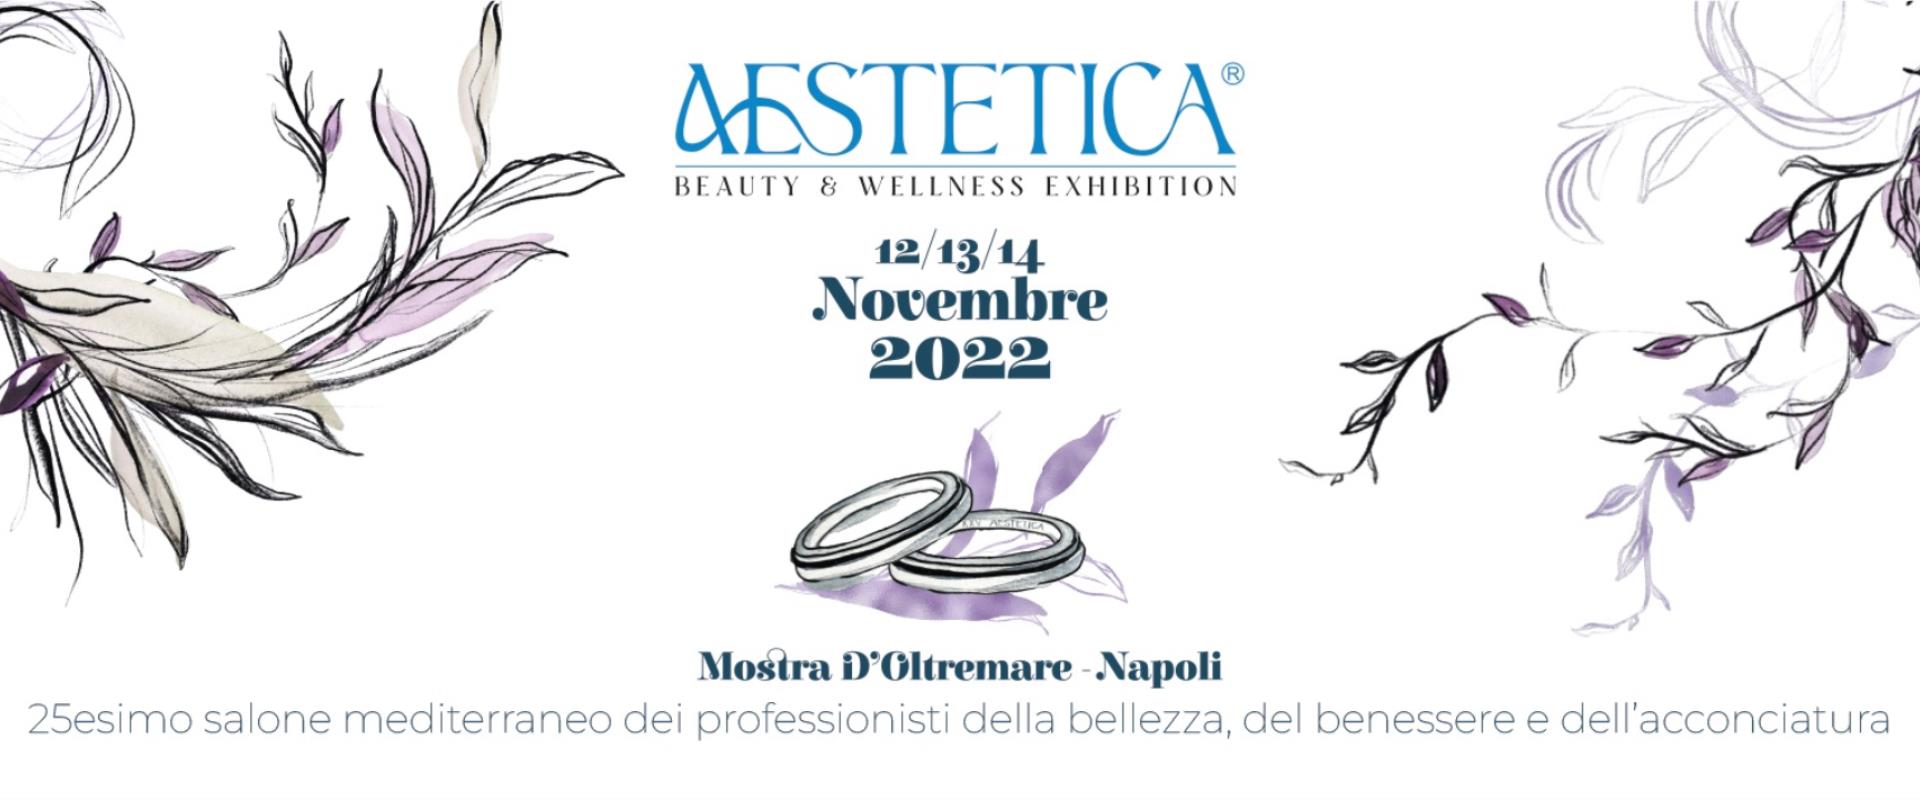 Aesthetic Beauty & Wellness Exhibition